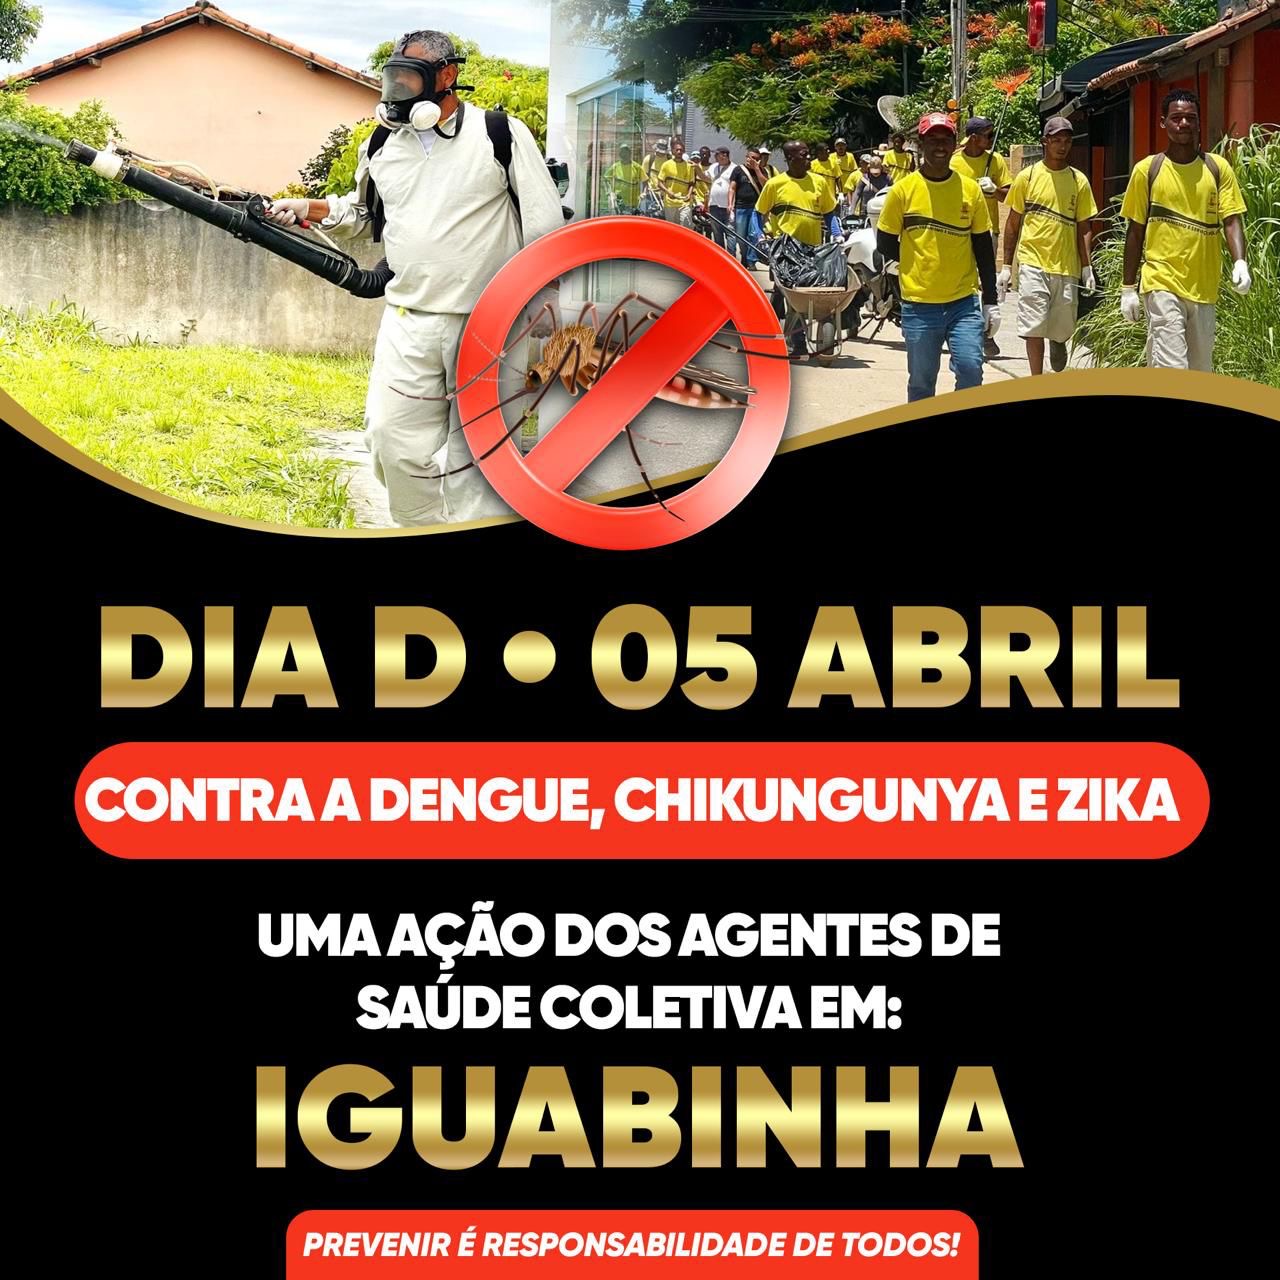 Prefeitura de Araruama vai realizar o Dia D contra a dengue no distrito de Iguabinha, nessa sexta-feira, 05